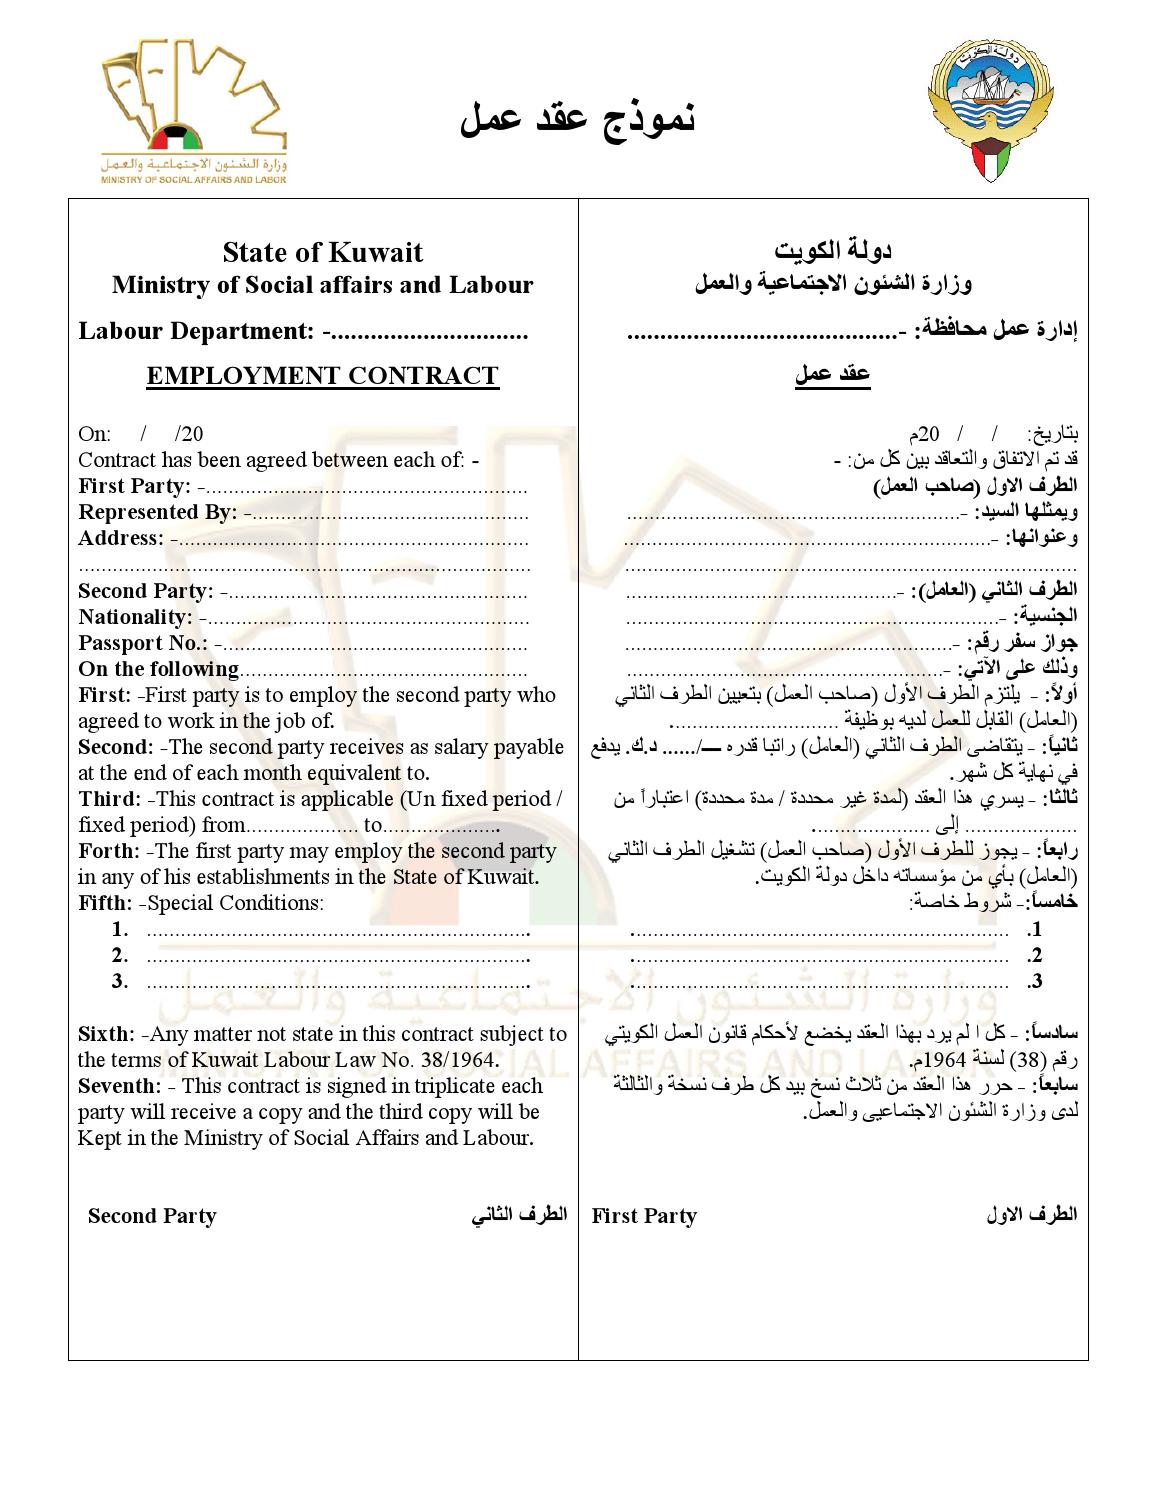 وزارة الشؤون الاجتماعية والعمل عقد عمل كويتي جاهز للطباعة